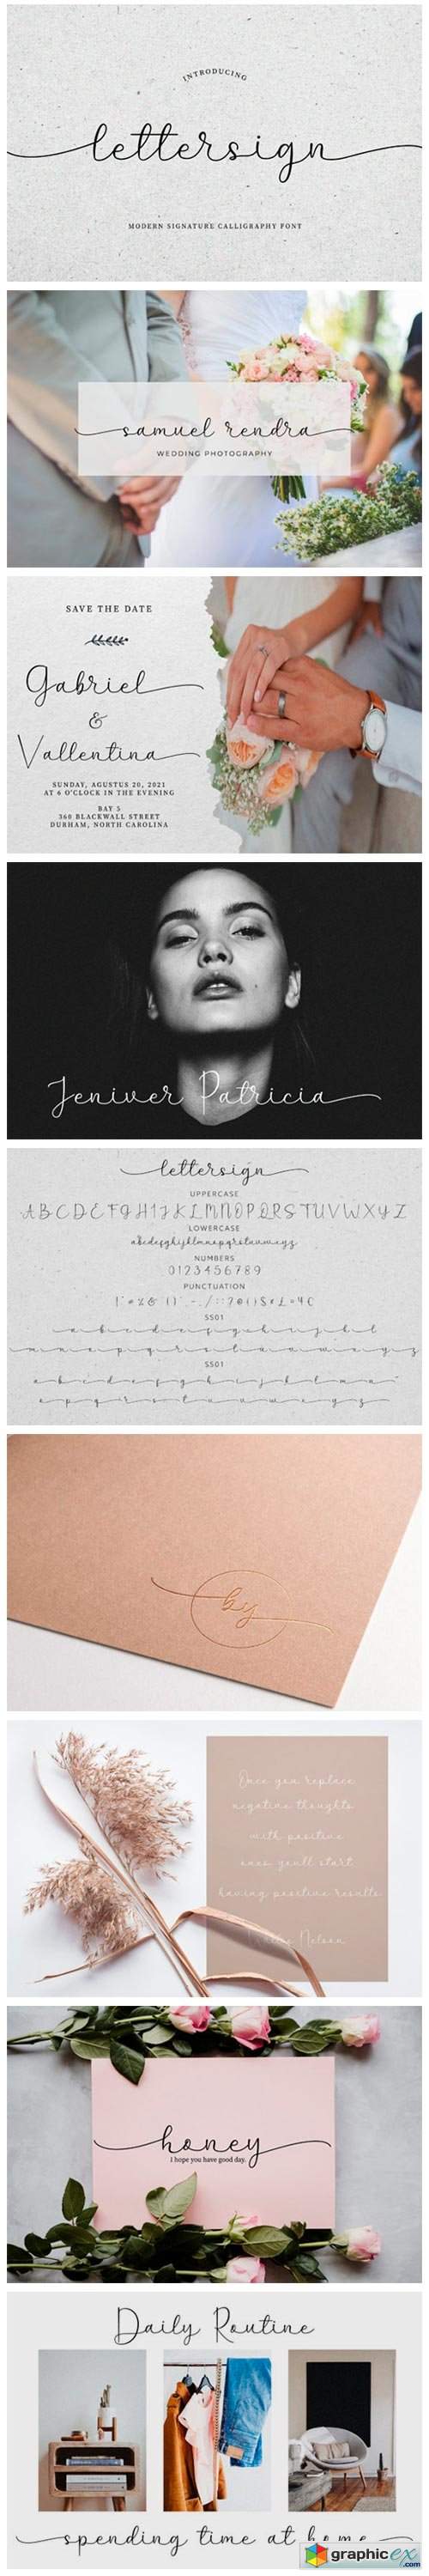  Lettersign Font 